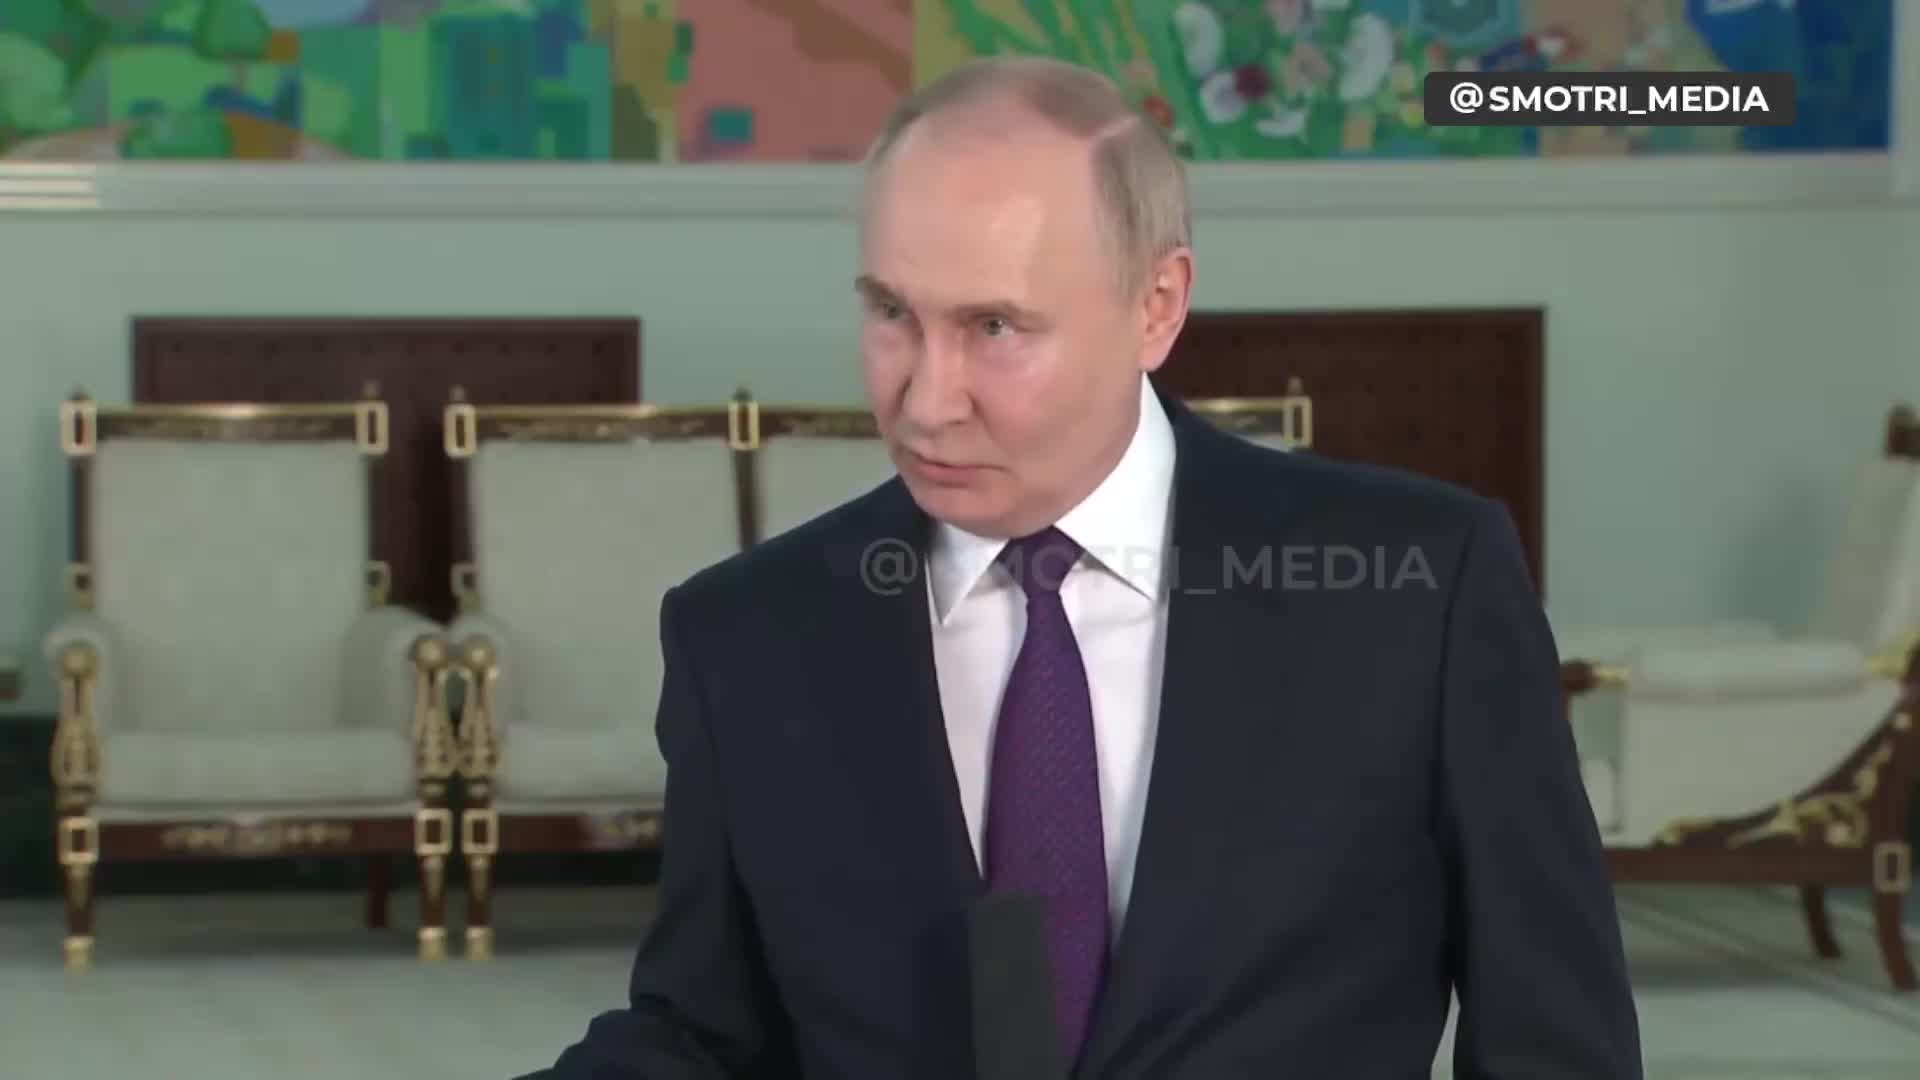 وتعهد بوتين بأن روسيا ستفعل ما خططت له بغض النظر عن حجم القوات الموجودة في أوكرانيا